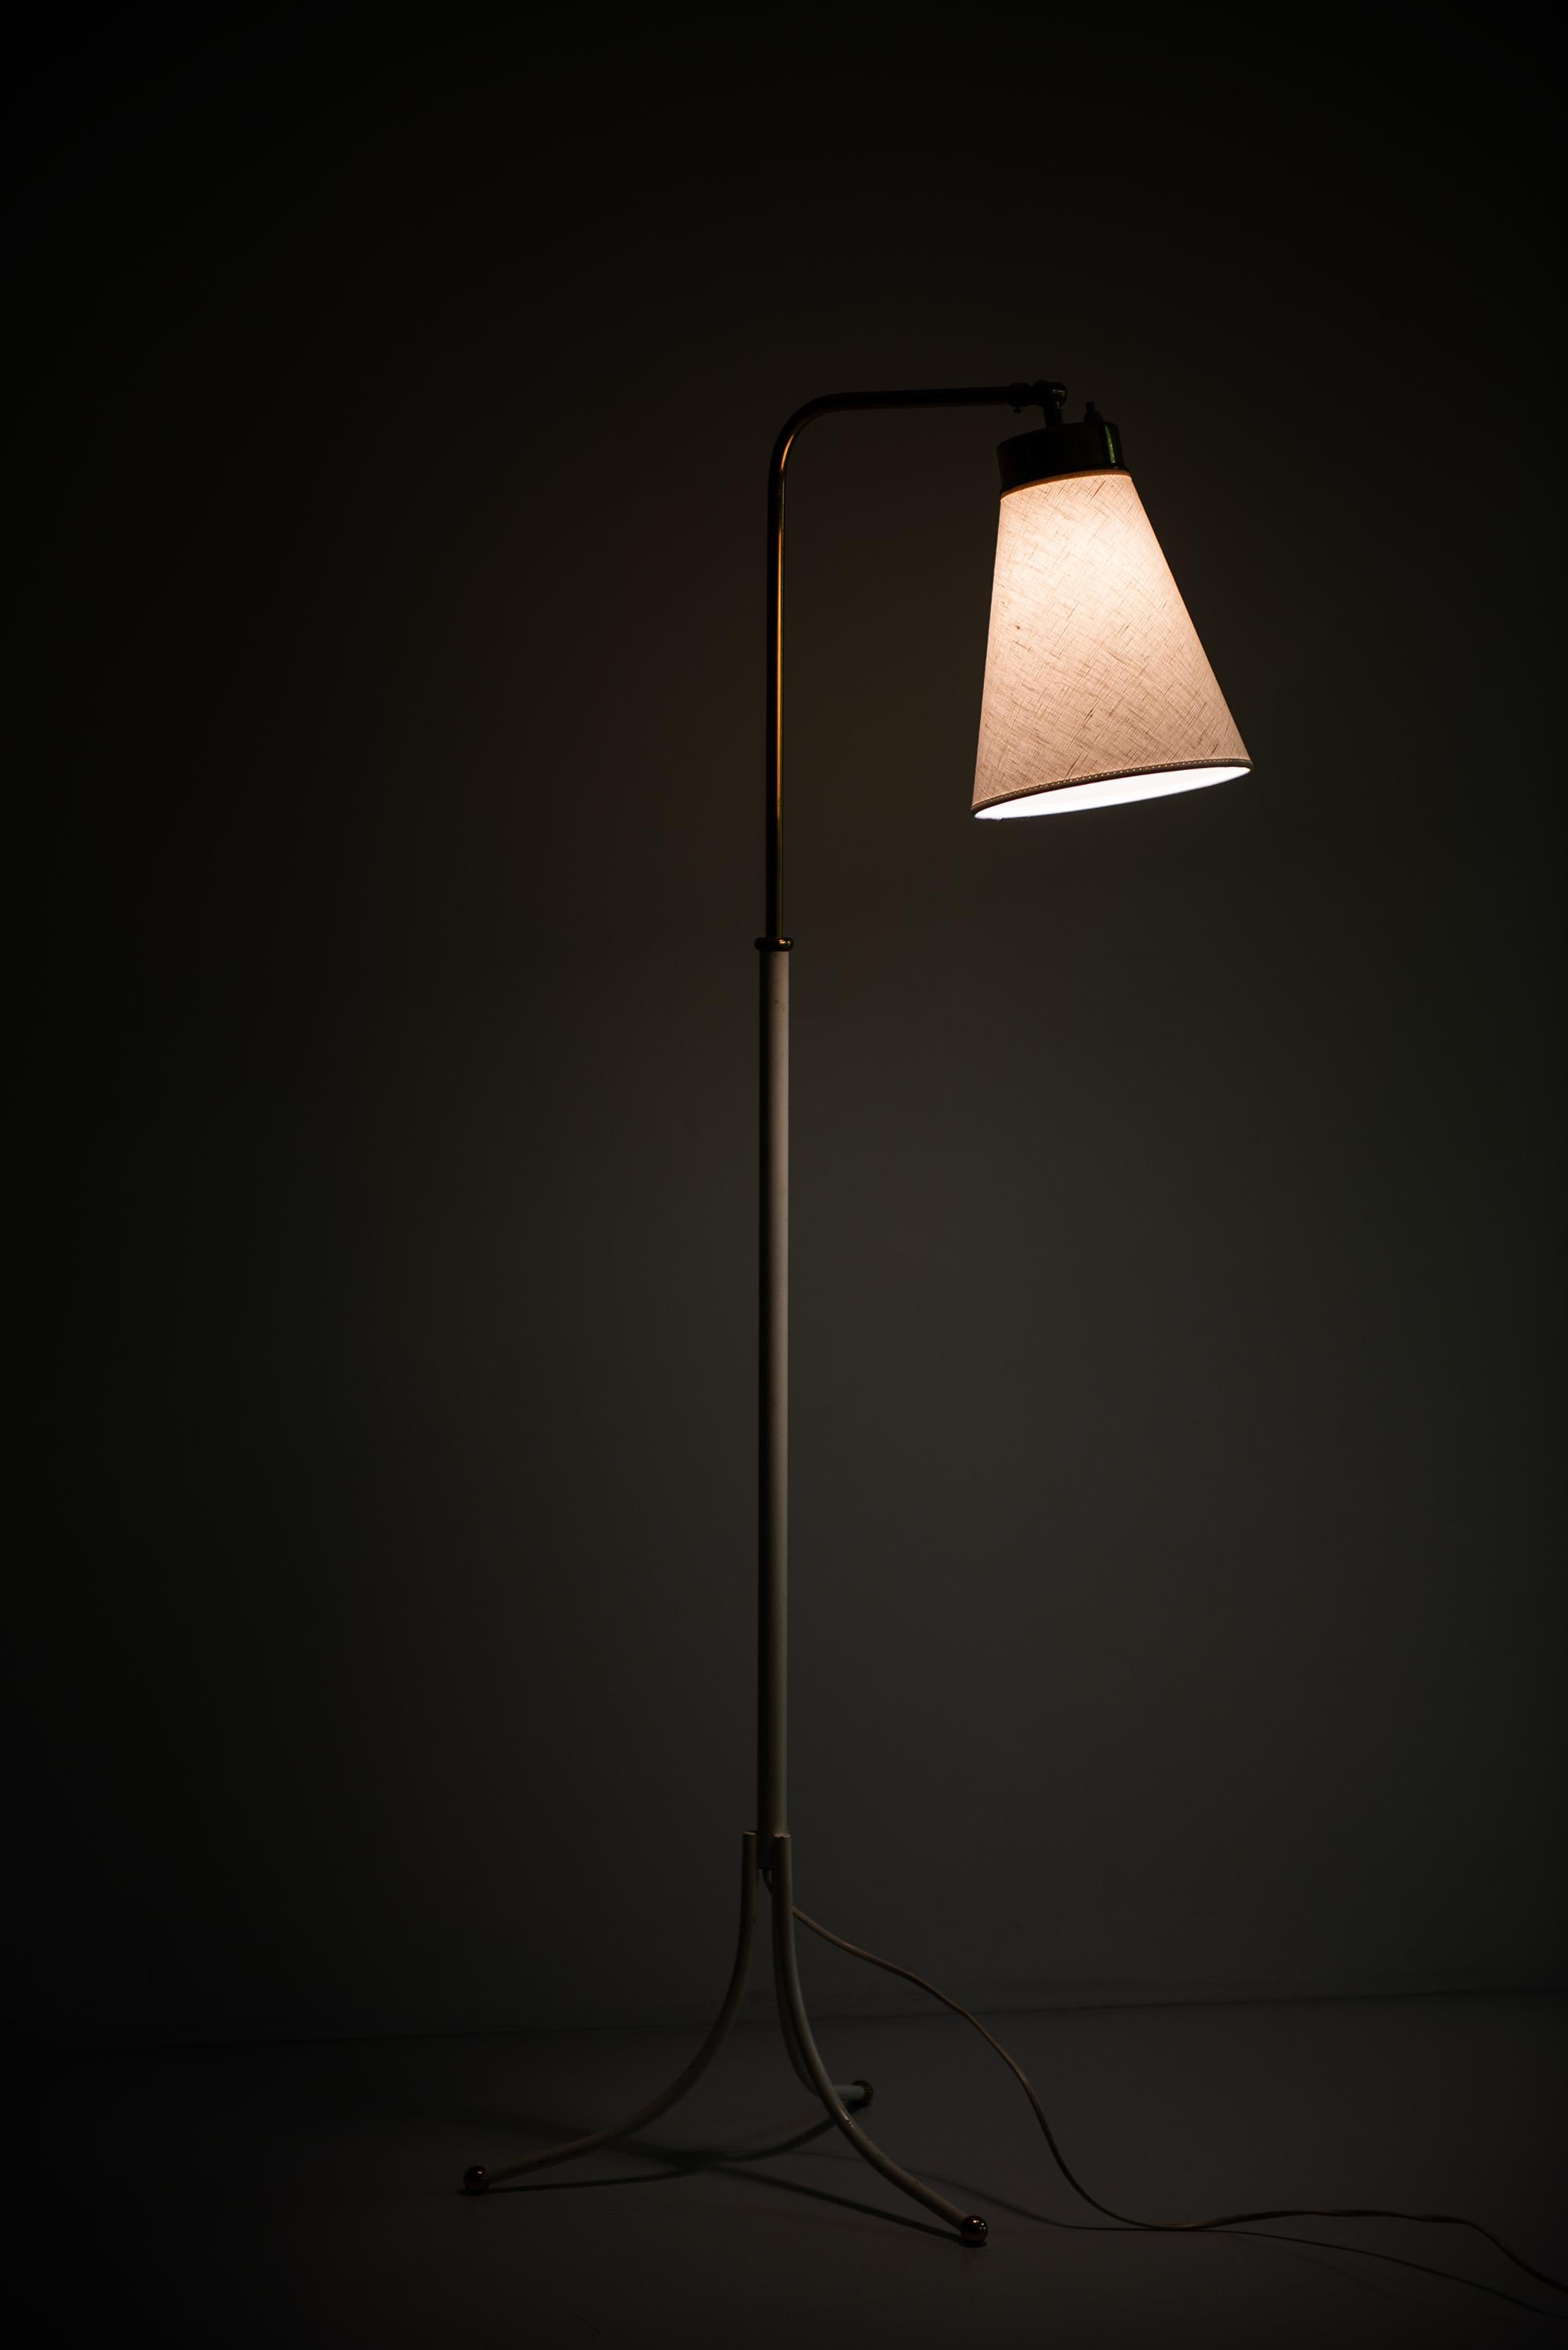 Mid-20th Century Josef Frank Floor Lamp Model 1842 Produced by Svenskt Tenn in Sweden